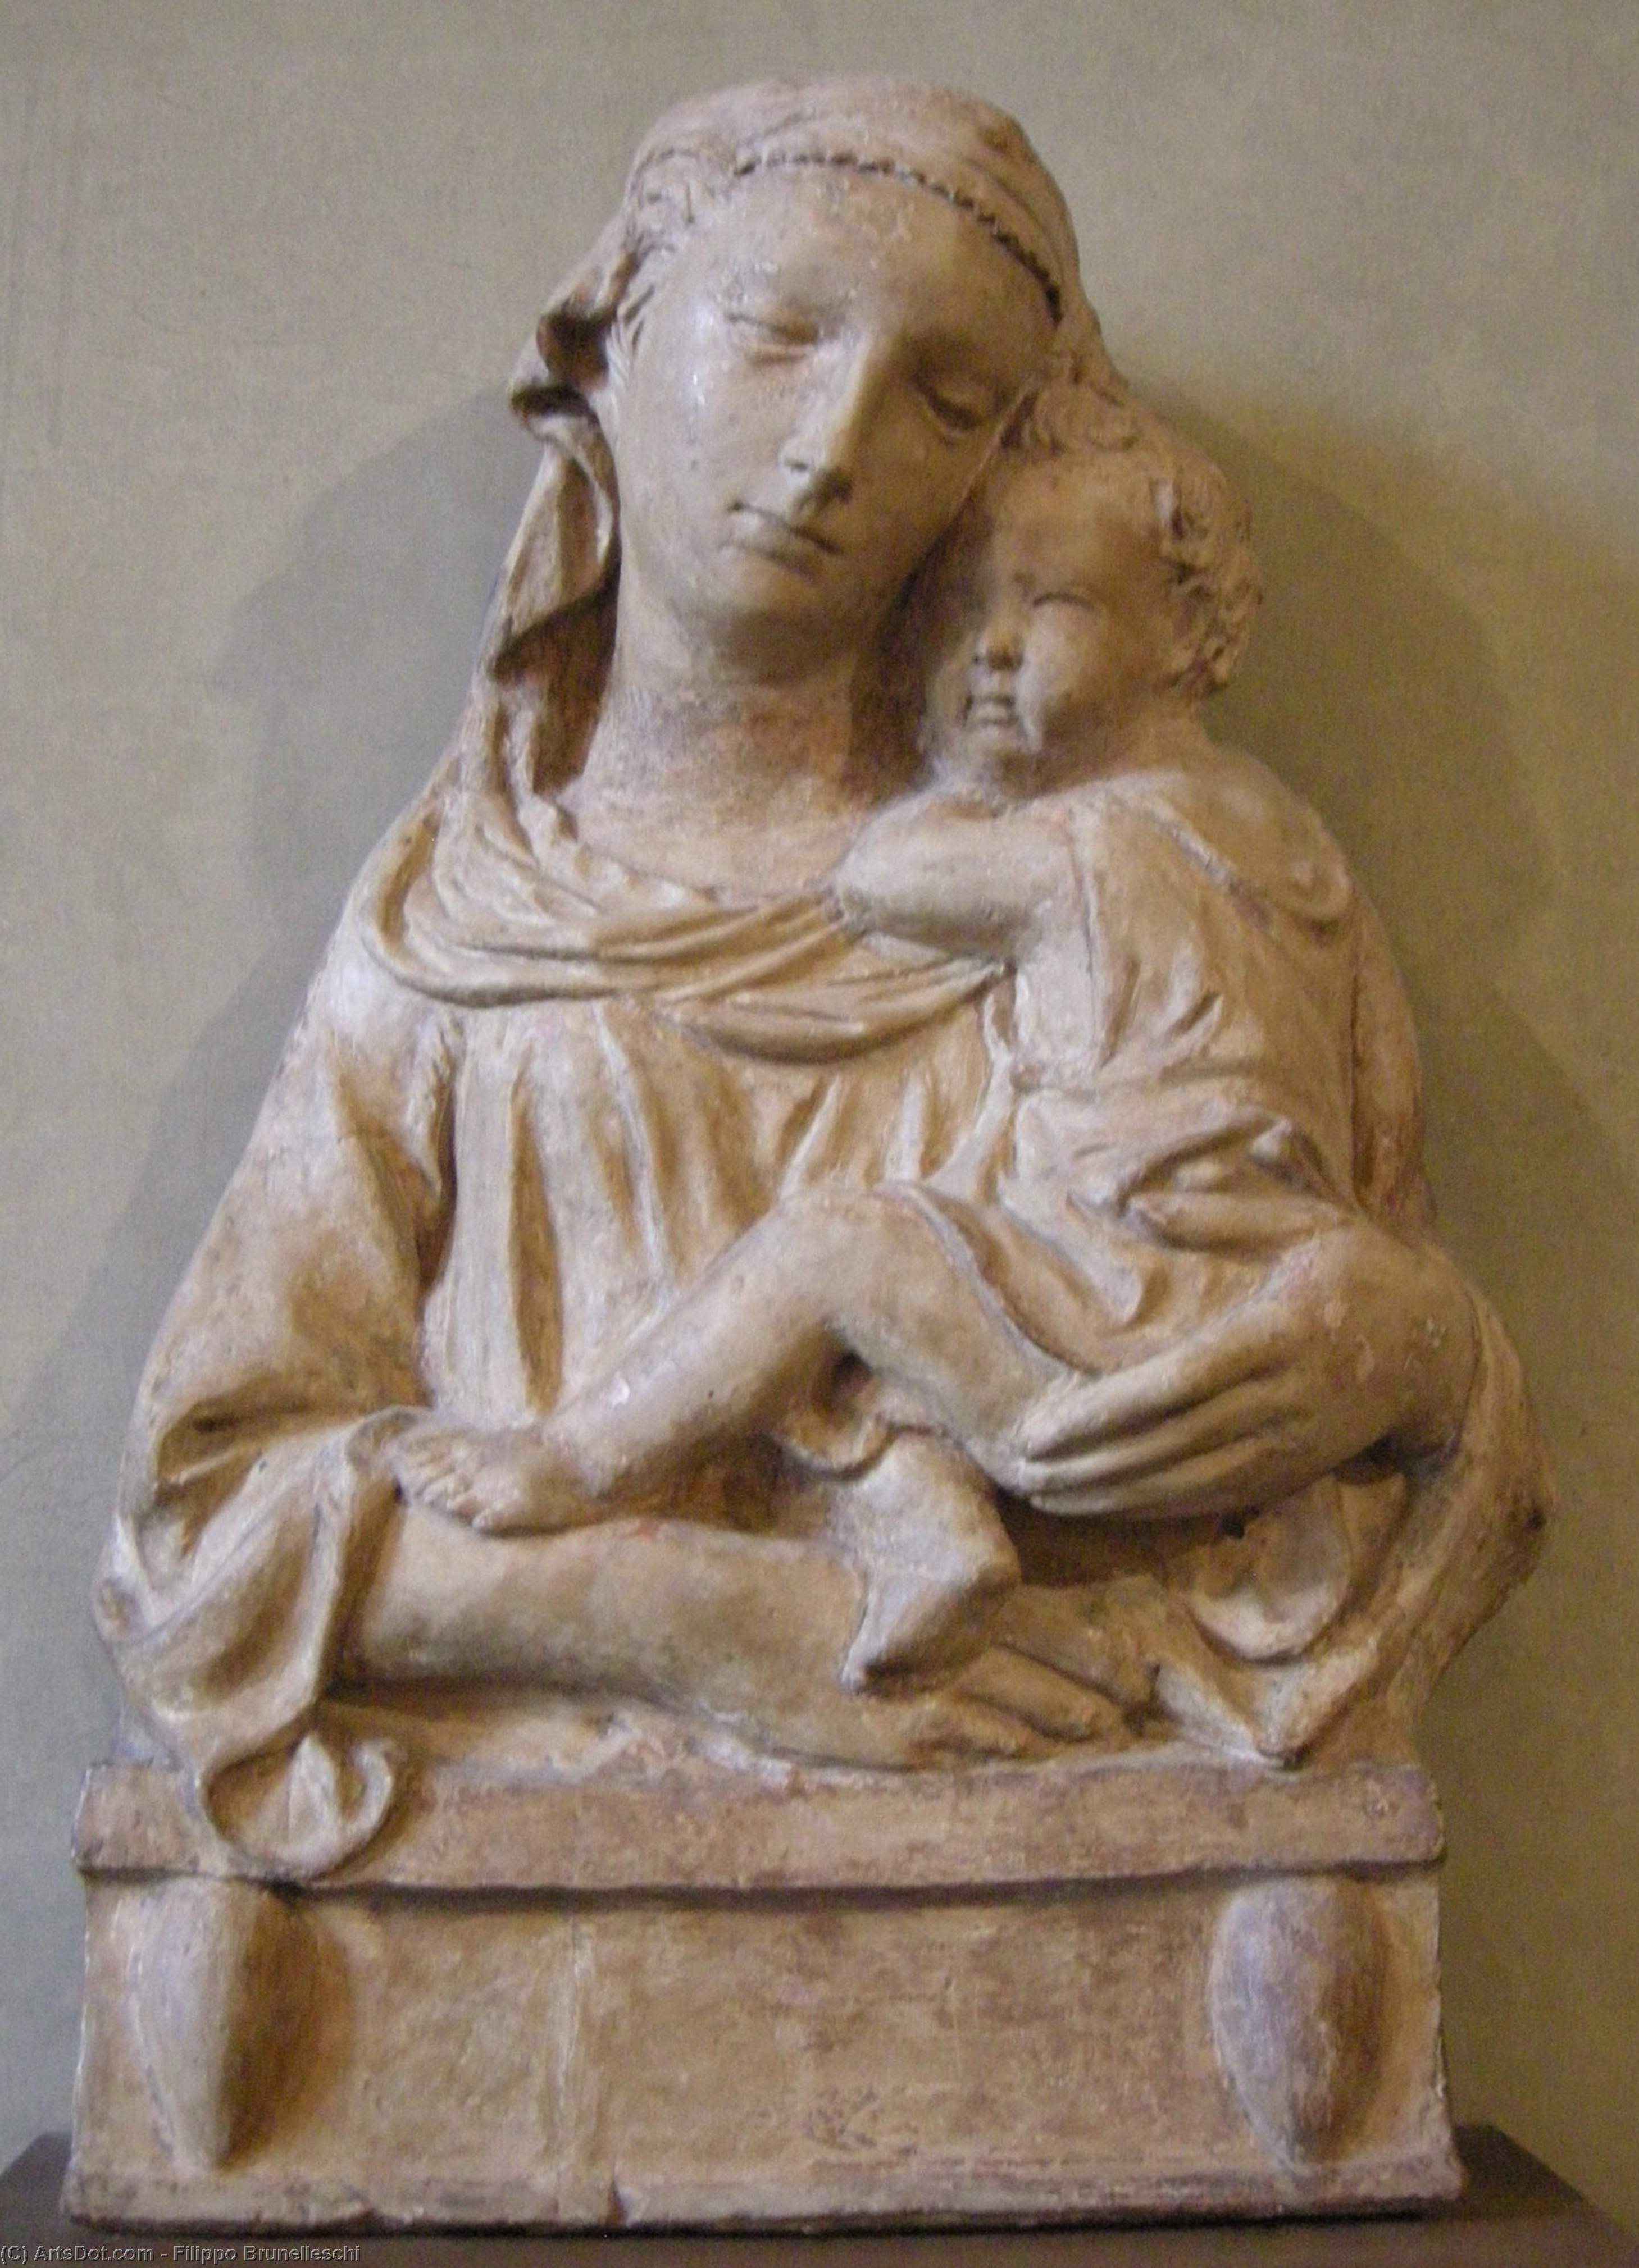 WikiOO.org - אנציקלופדיה לאמנויות יפות - ציור, יצירות אמנות Filippo Brunelleschi - Madonna with Child